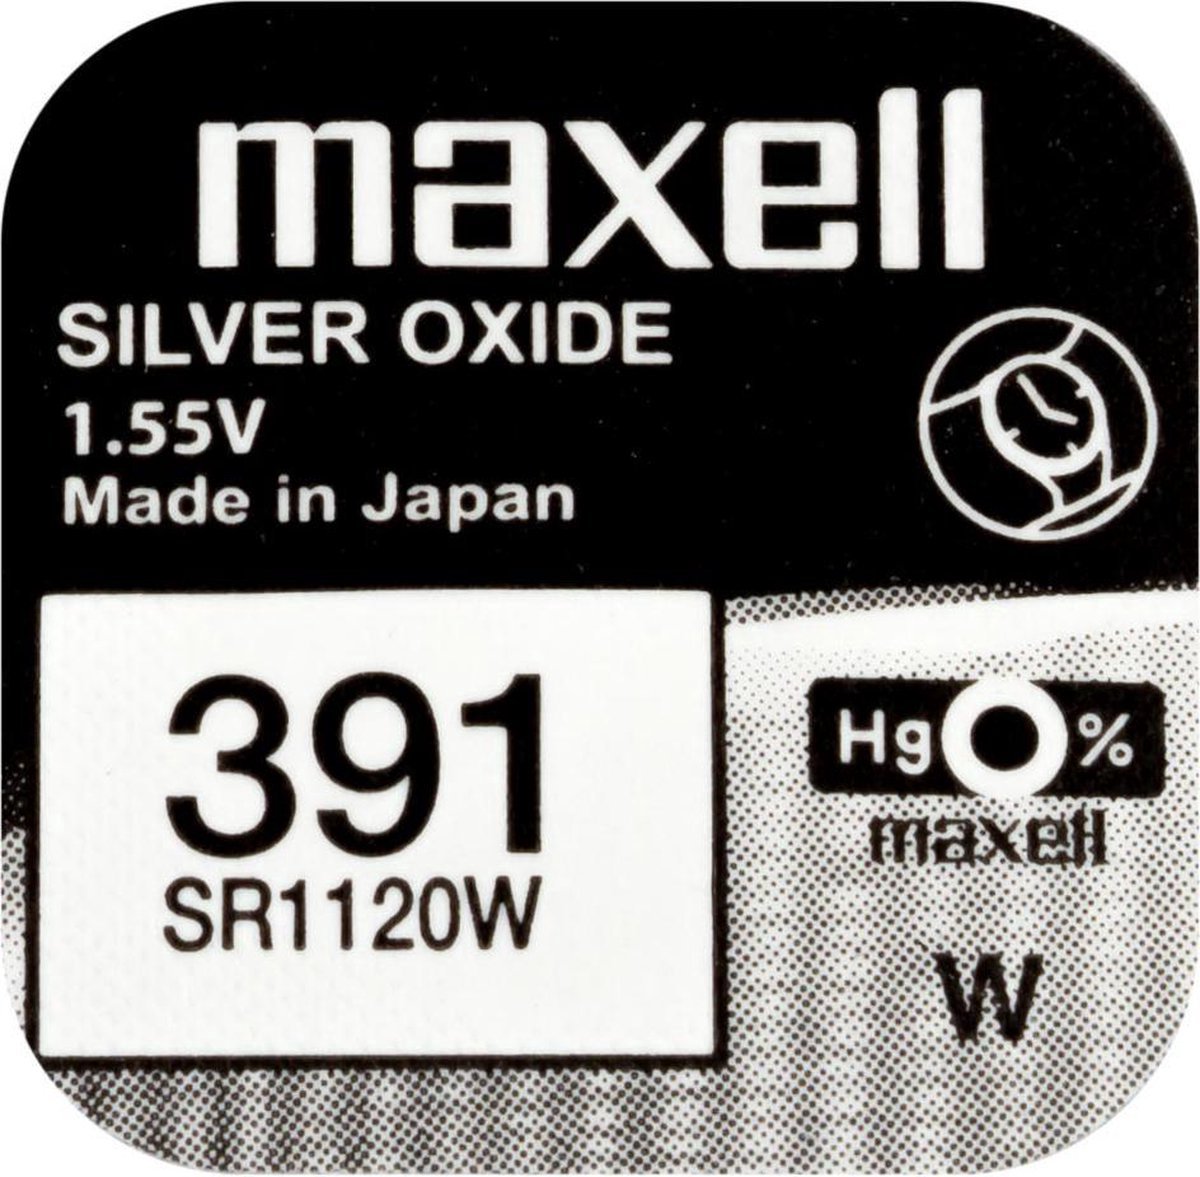 MAXELL - 391 / SR1120W - Zilveroxide Knoopcel - horlogebatterij - 2 (twee) stuks